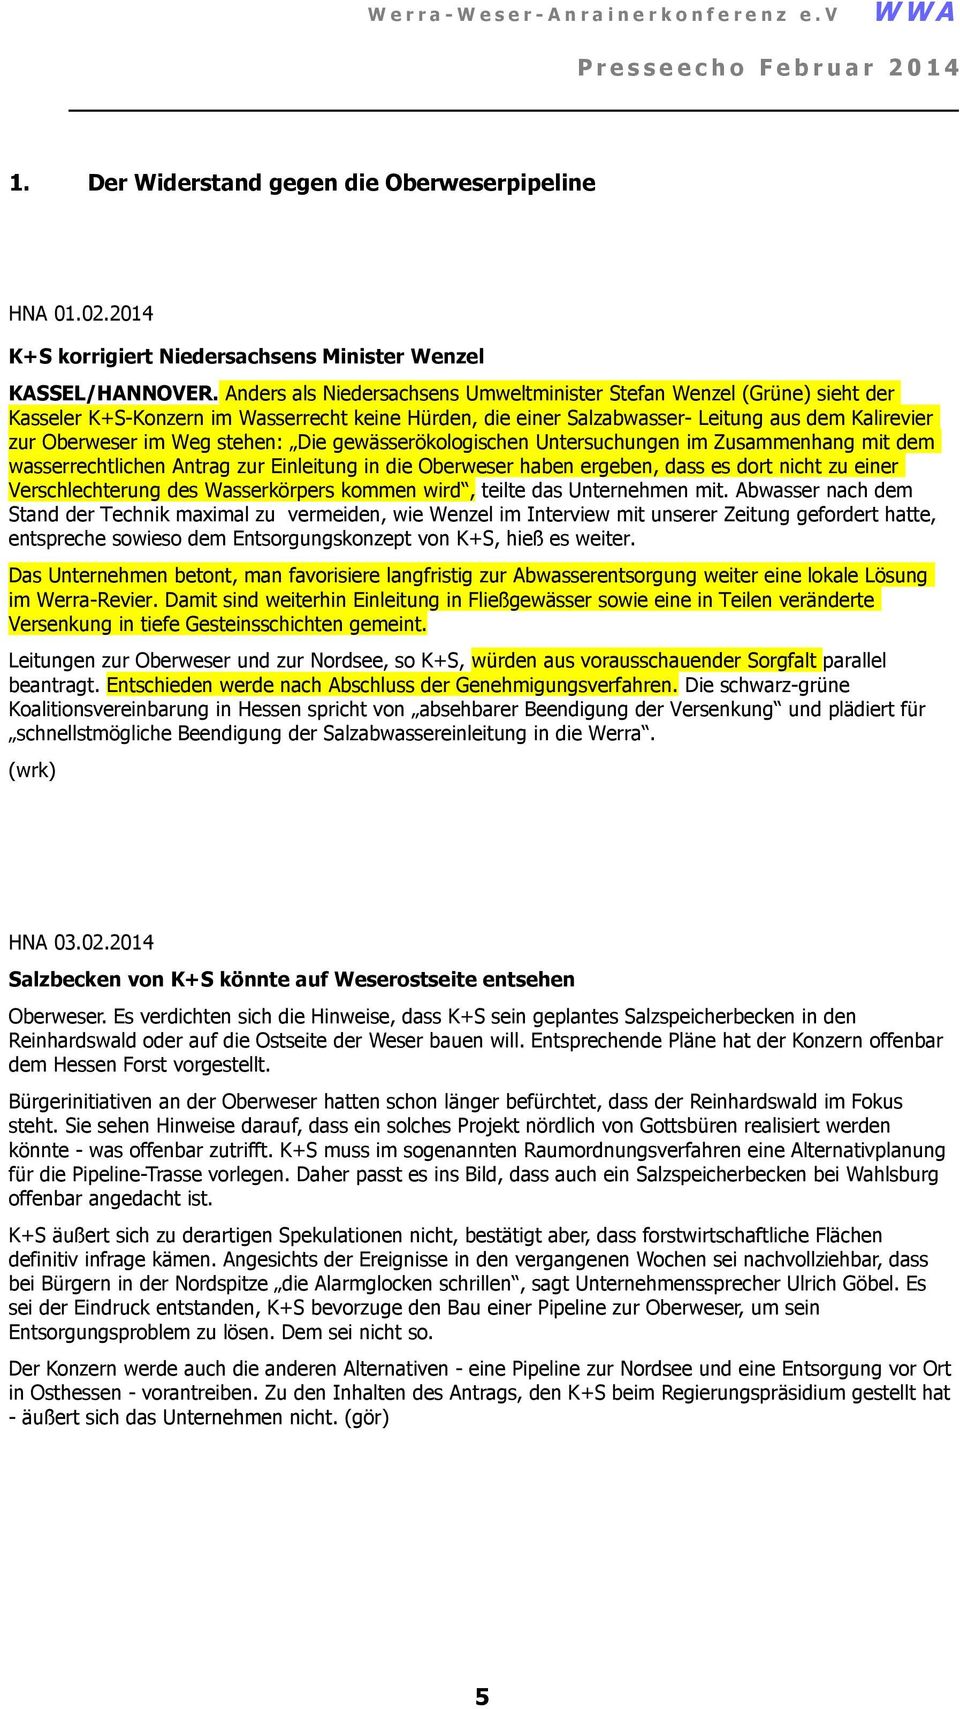 Anders als Niedersachsens Umweltminister Stefan Wenzel (Grüne) sieht der Kasseler K+S-Konzern im Wasserrecht keine Hürden, die einer Salzabwasser- Leitung aus dem Kalirevier zur Oberweser im Weg